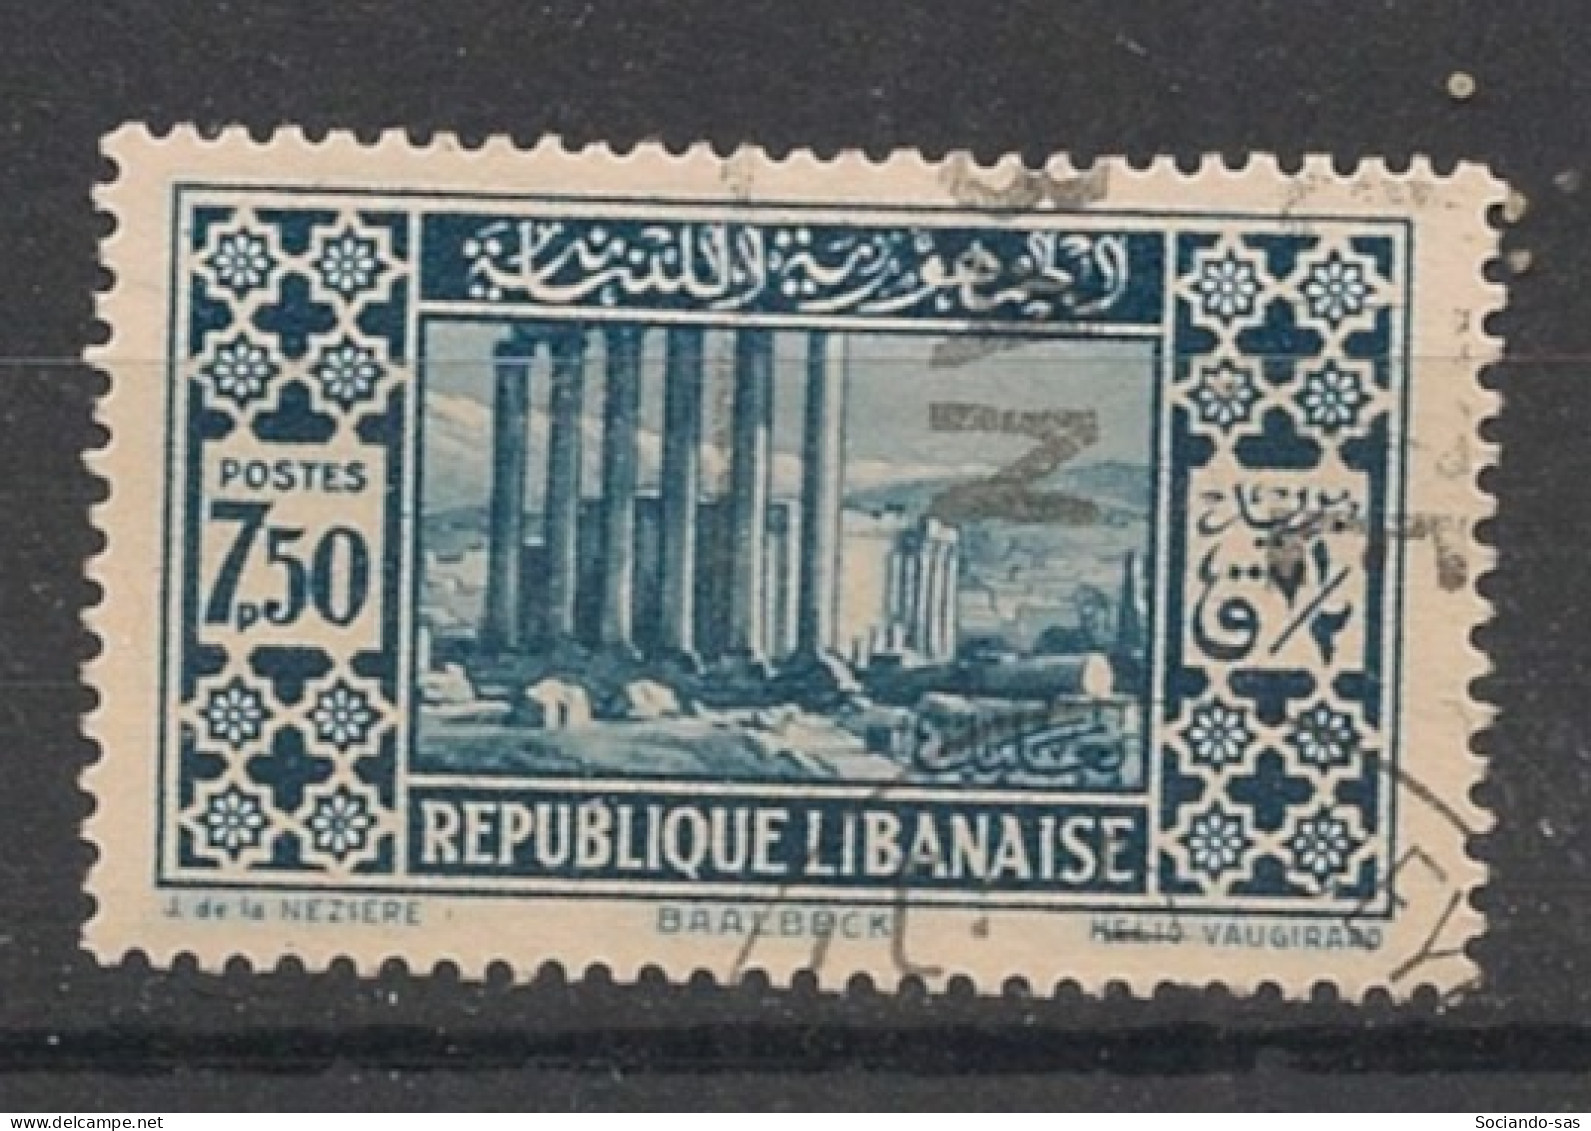 GRAND LIBAN - 1930-35 - N°YT. 143 - Baalbeck 7pi50 Bleu - Oblitéré / Used - Oblitérés